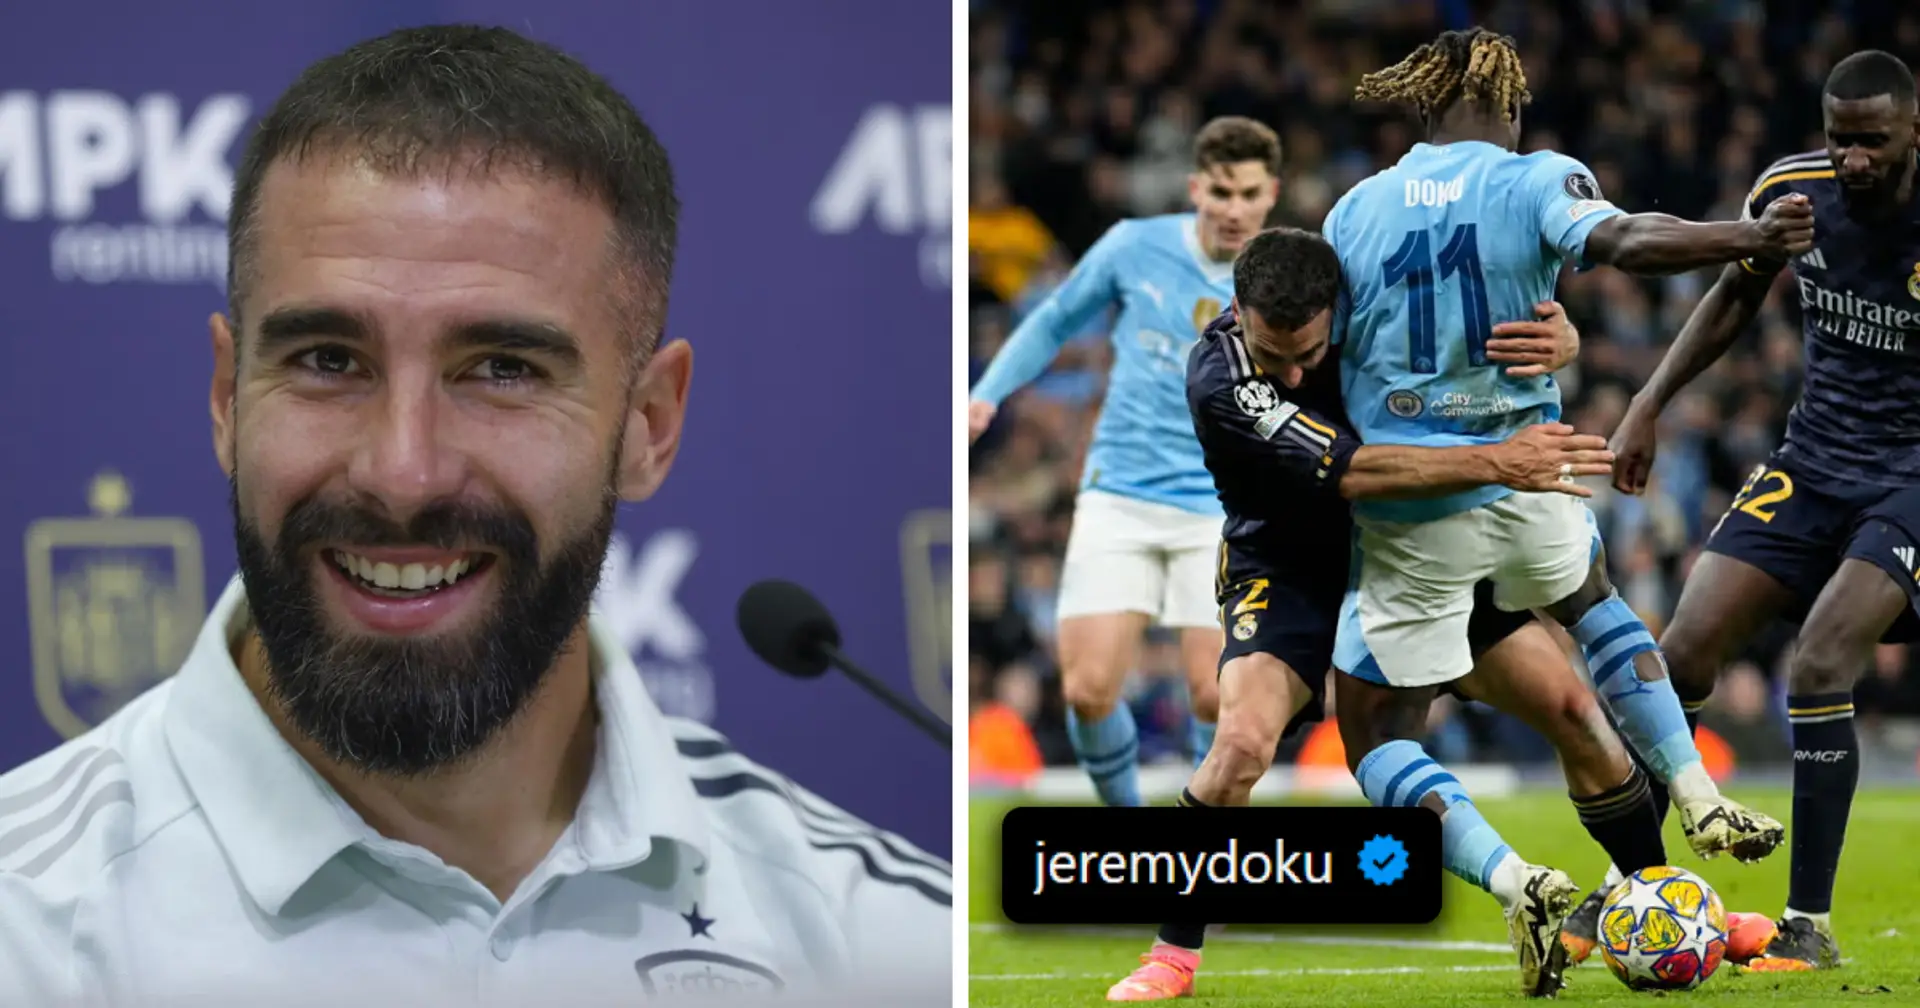 "Questo è ciò che chiamano pocketing": i tifosi del Manchester City reagiscono alla foto di Doku nella storia di Instagram